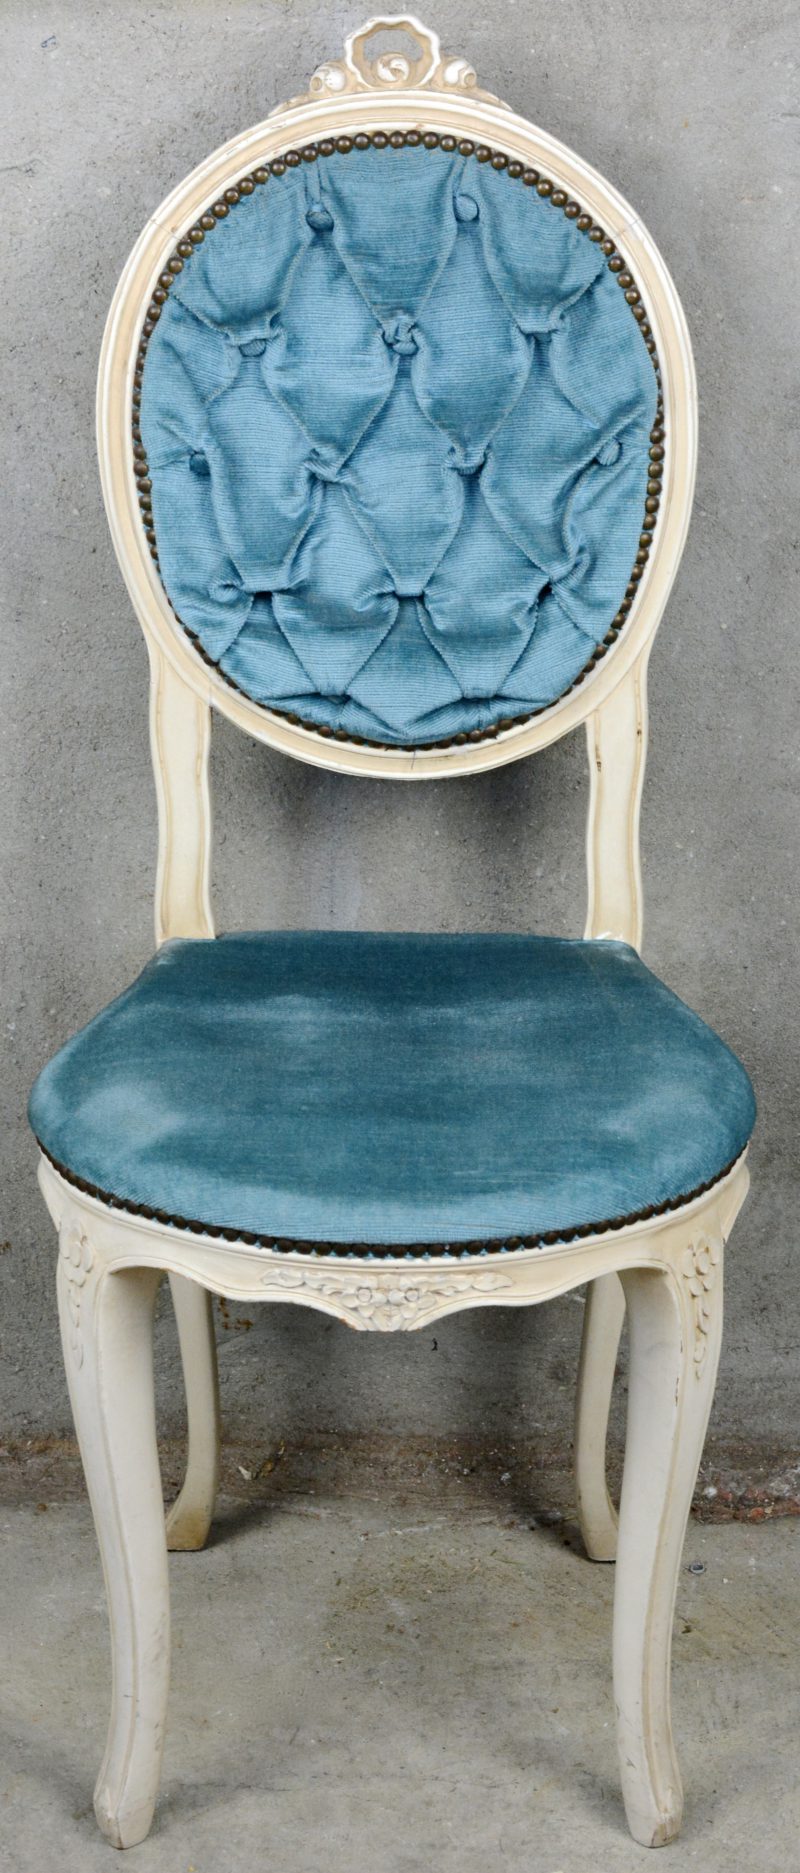 Een witgepatineerd boudoirstoeltje met blauw fluwelen bekleding.